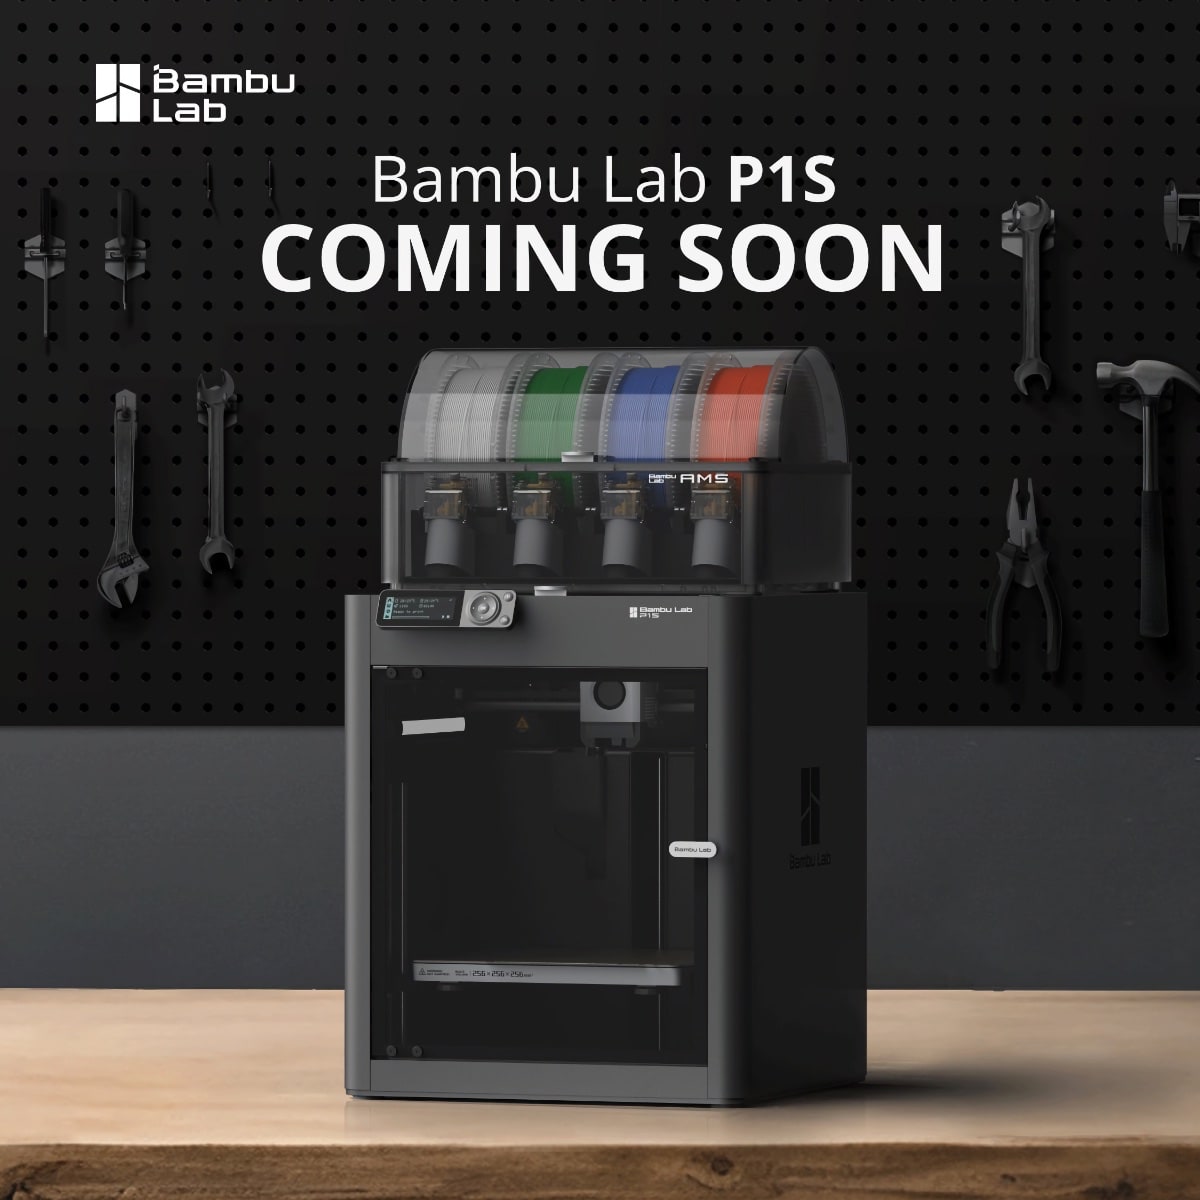 Bambu Lab teasert neues P1S-Modell an